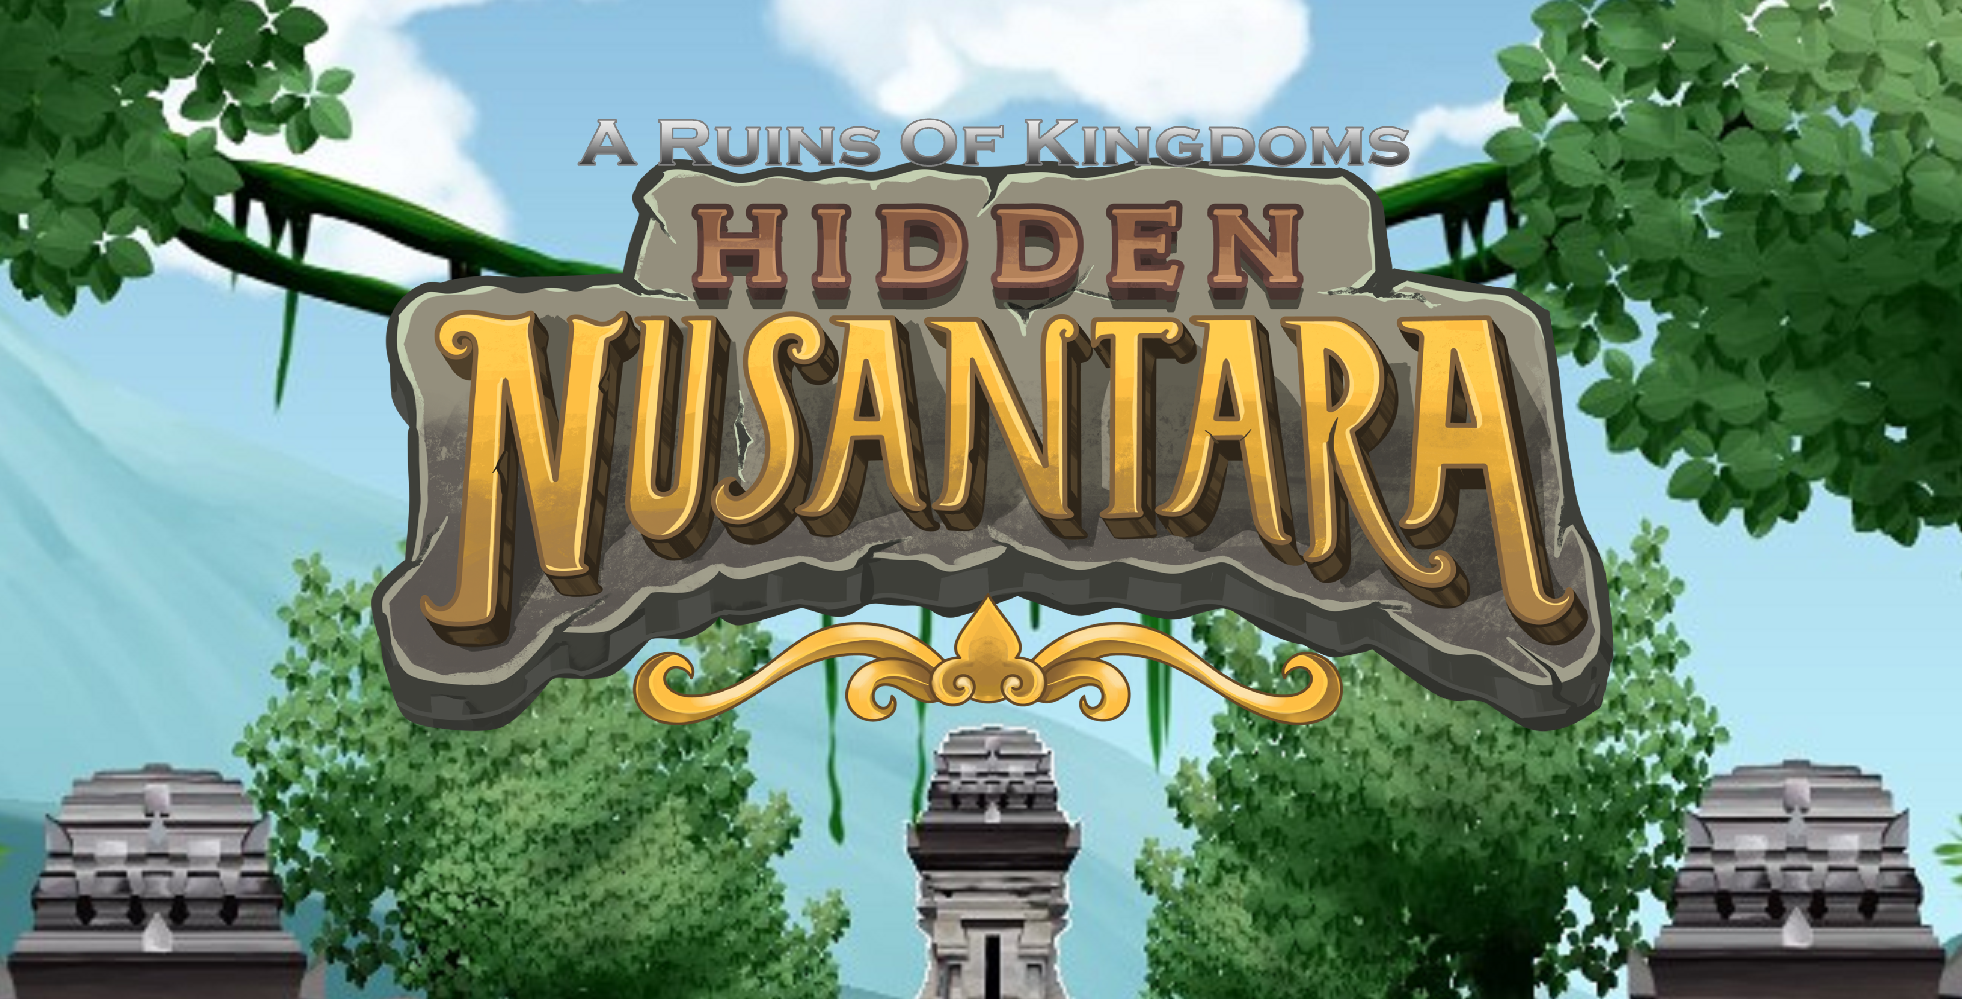 Hidden Nusantara: A Ruins Of Kingdoms